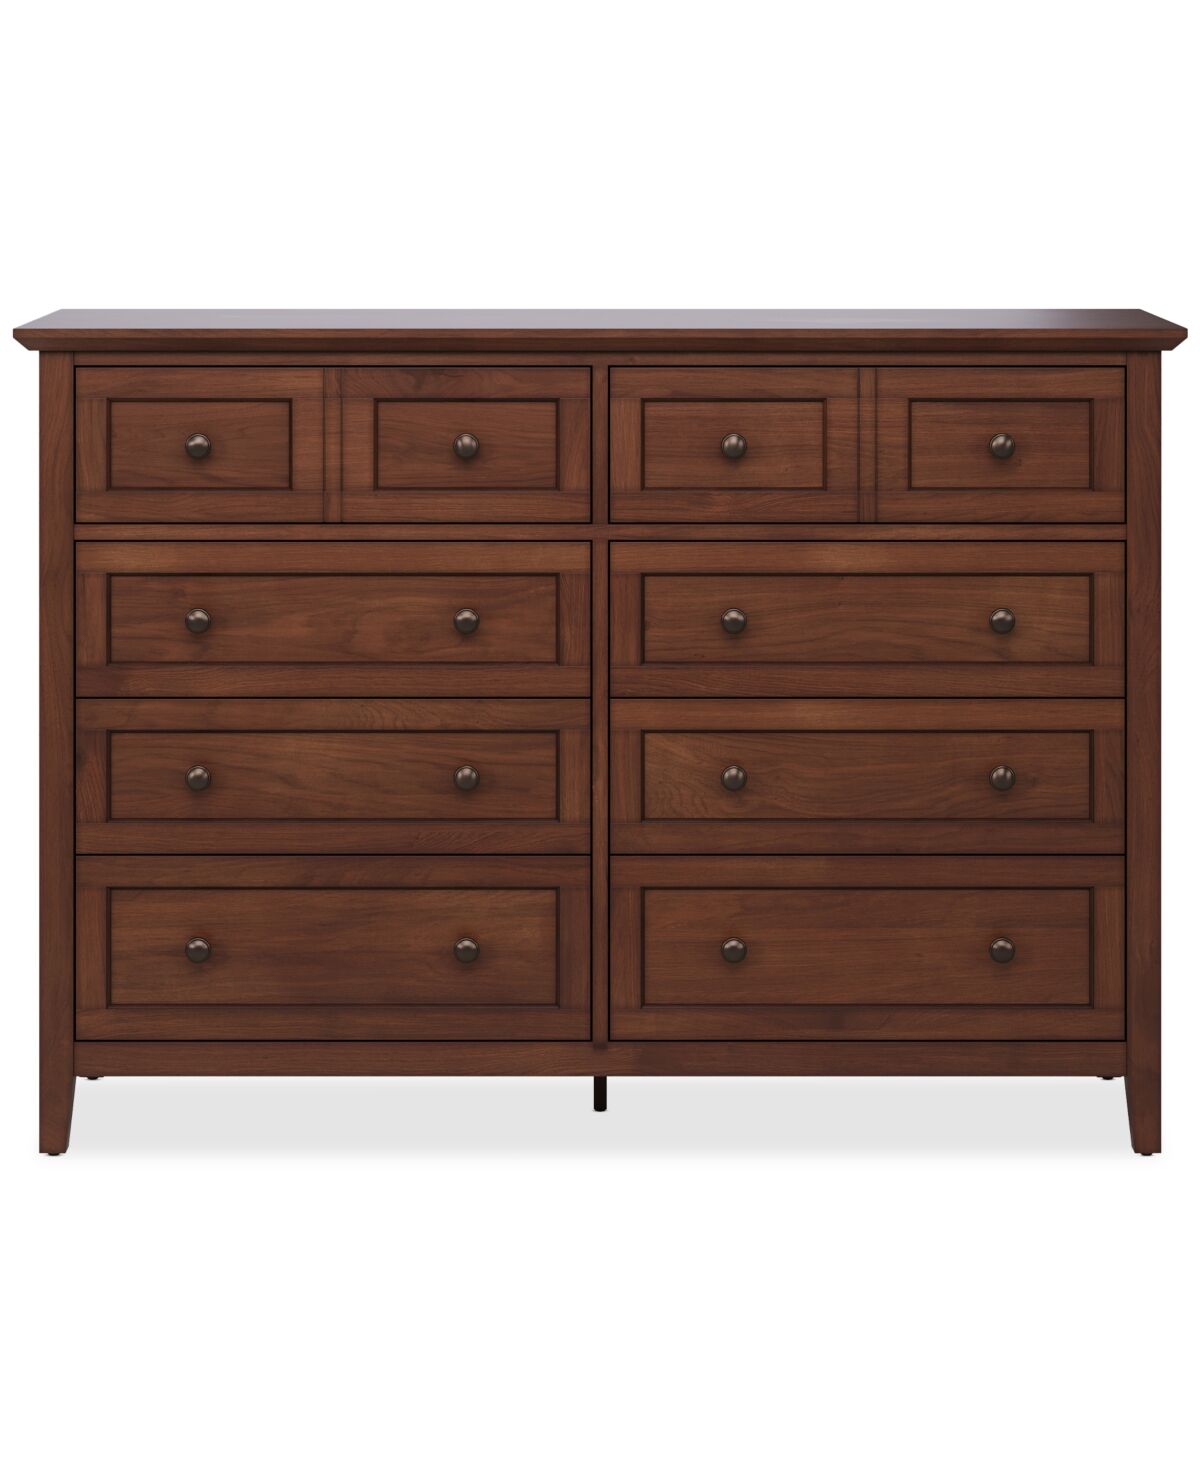 Furniture Hedworth Dresser - Brown